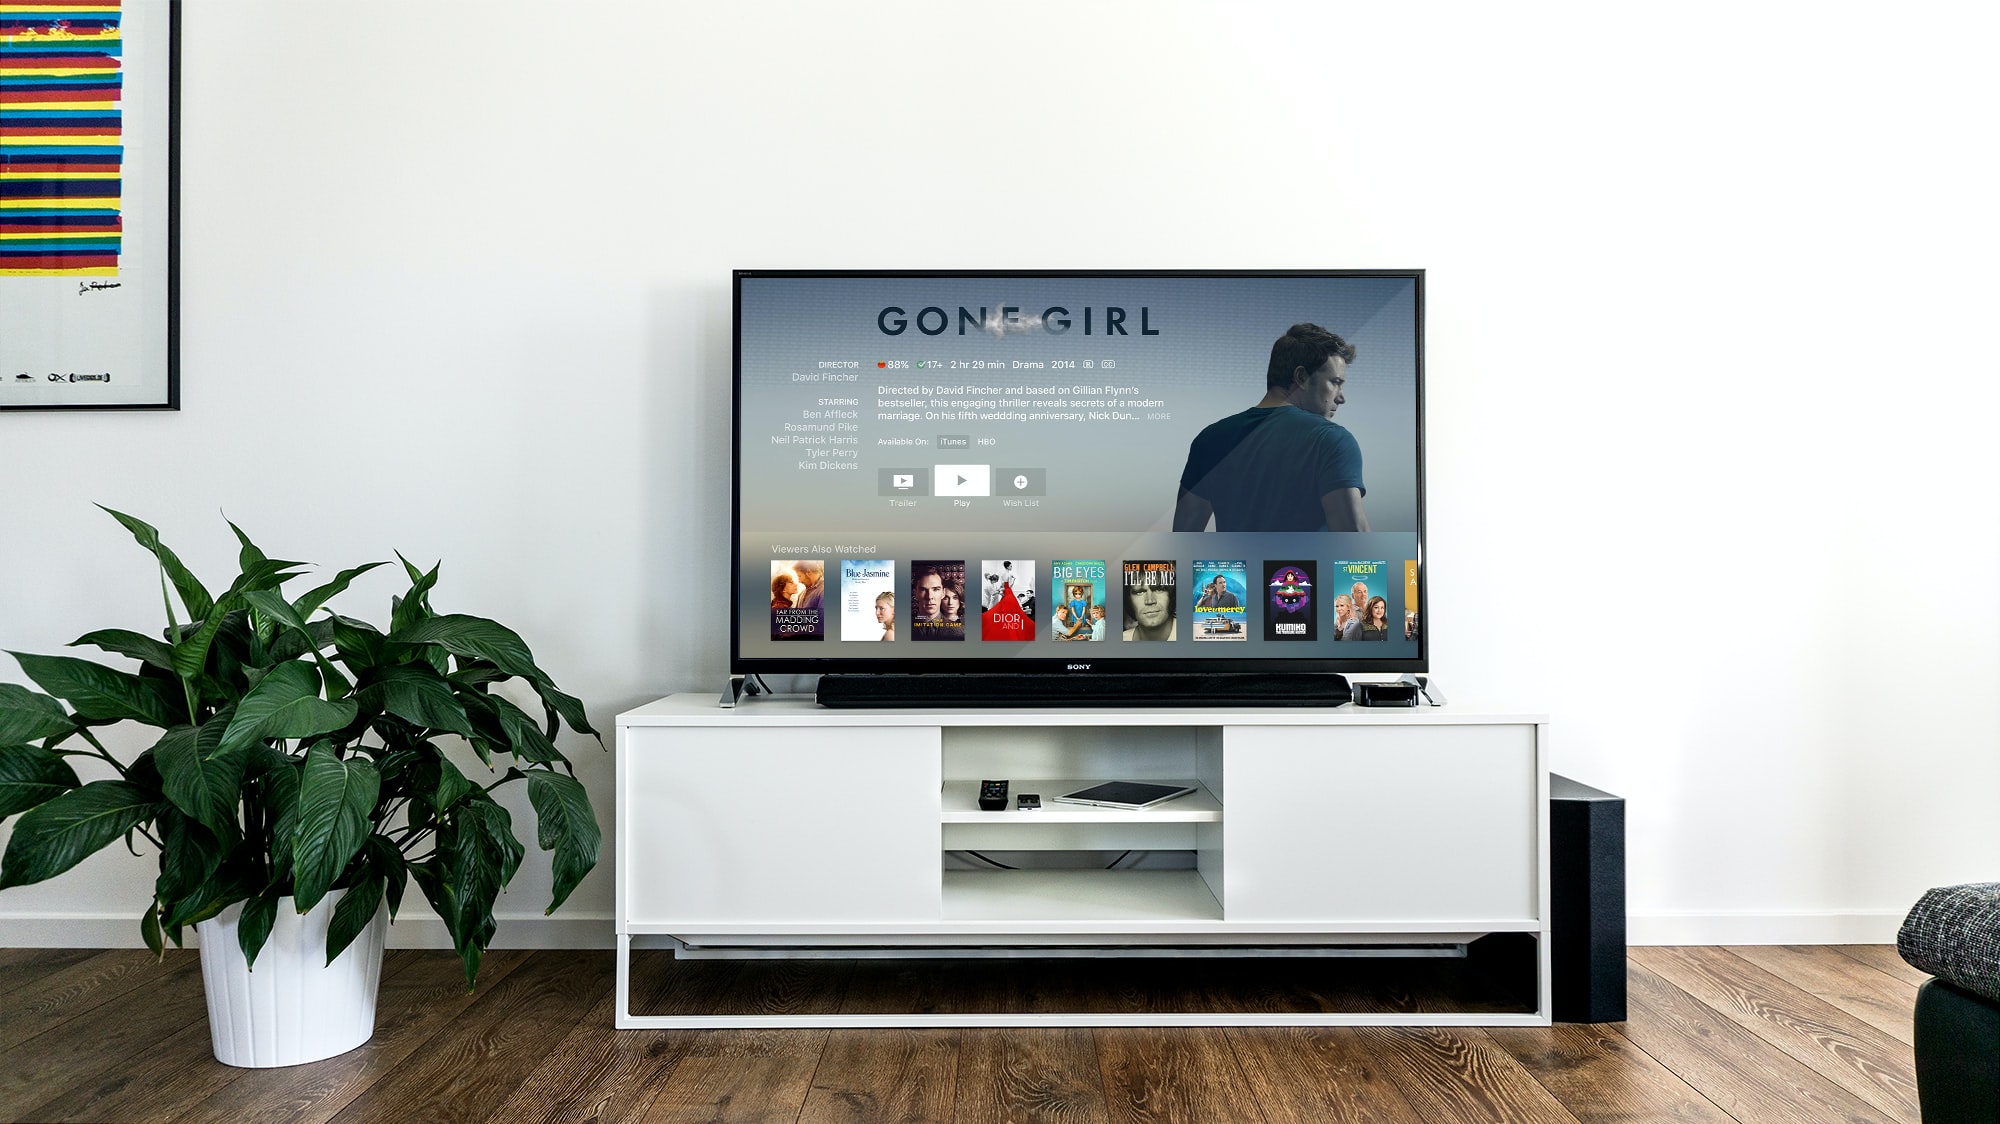 Una smart TV dentro una tradizionale configurazione domestica